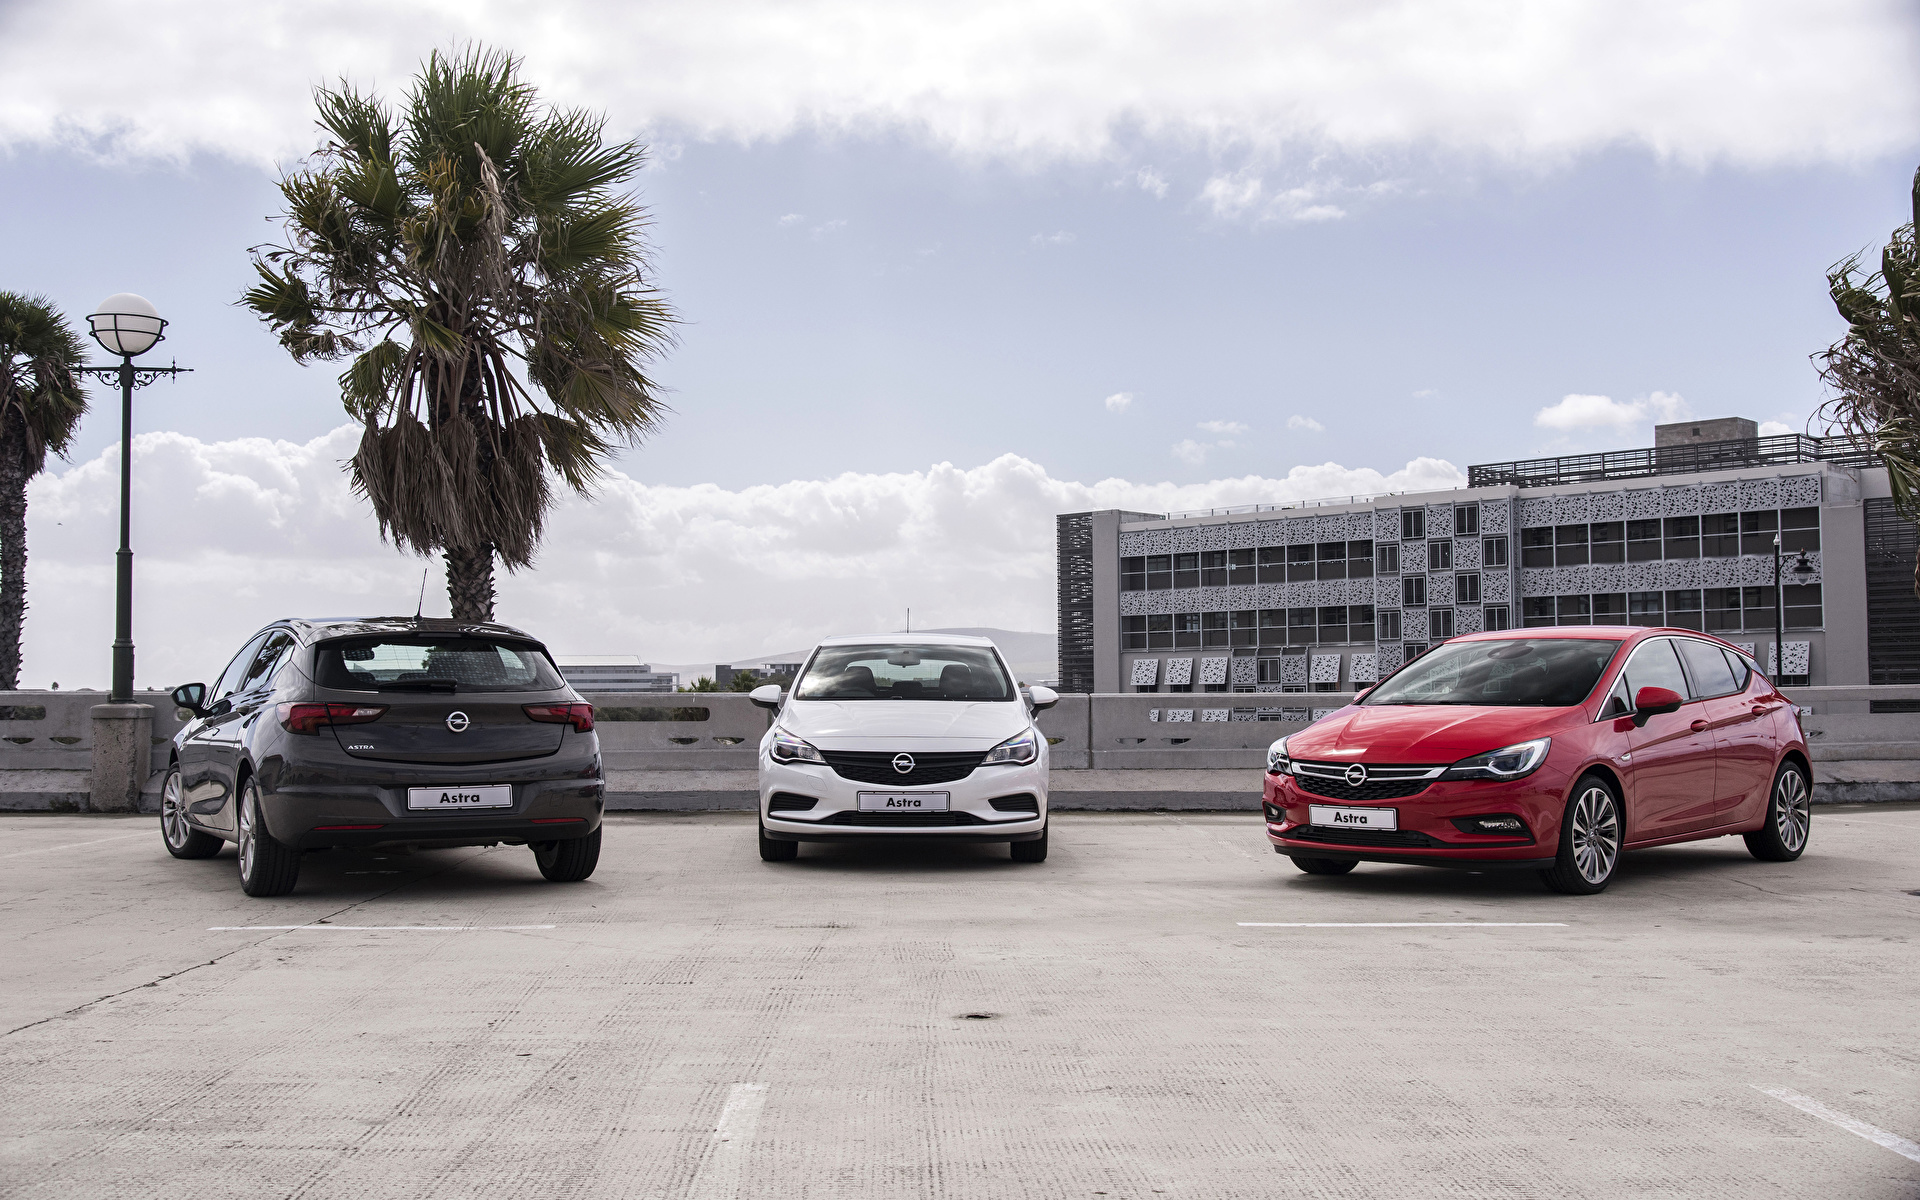 Bilder på skrivbordet Opel 2015 Astra (K) bil Tre 3 1920x1200 Bilar automobil